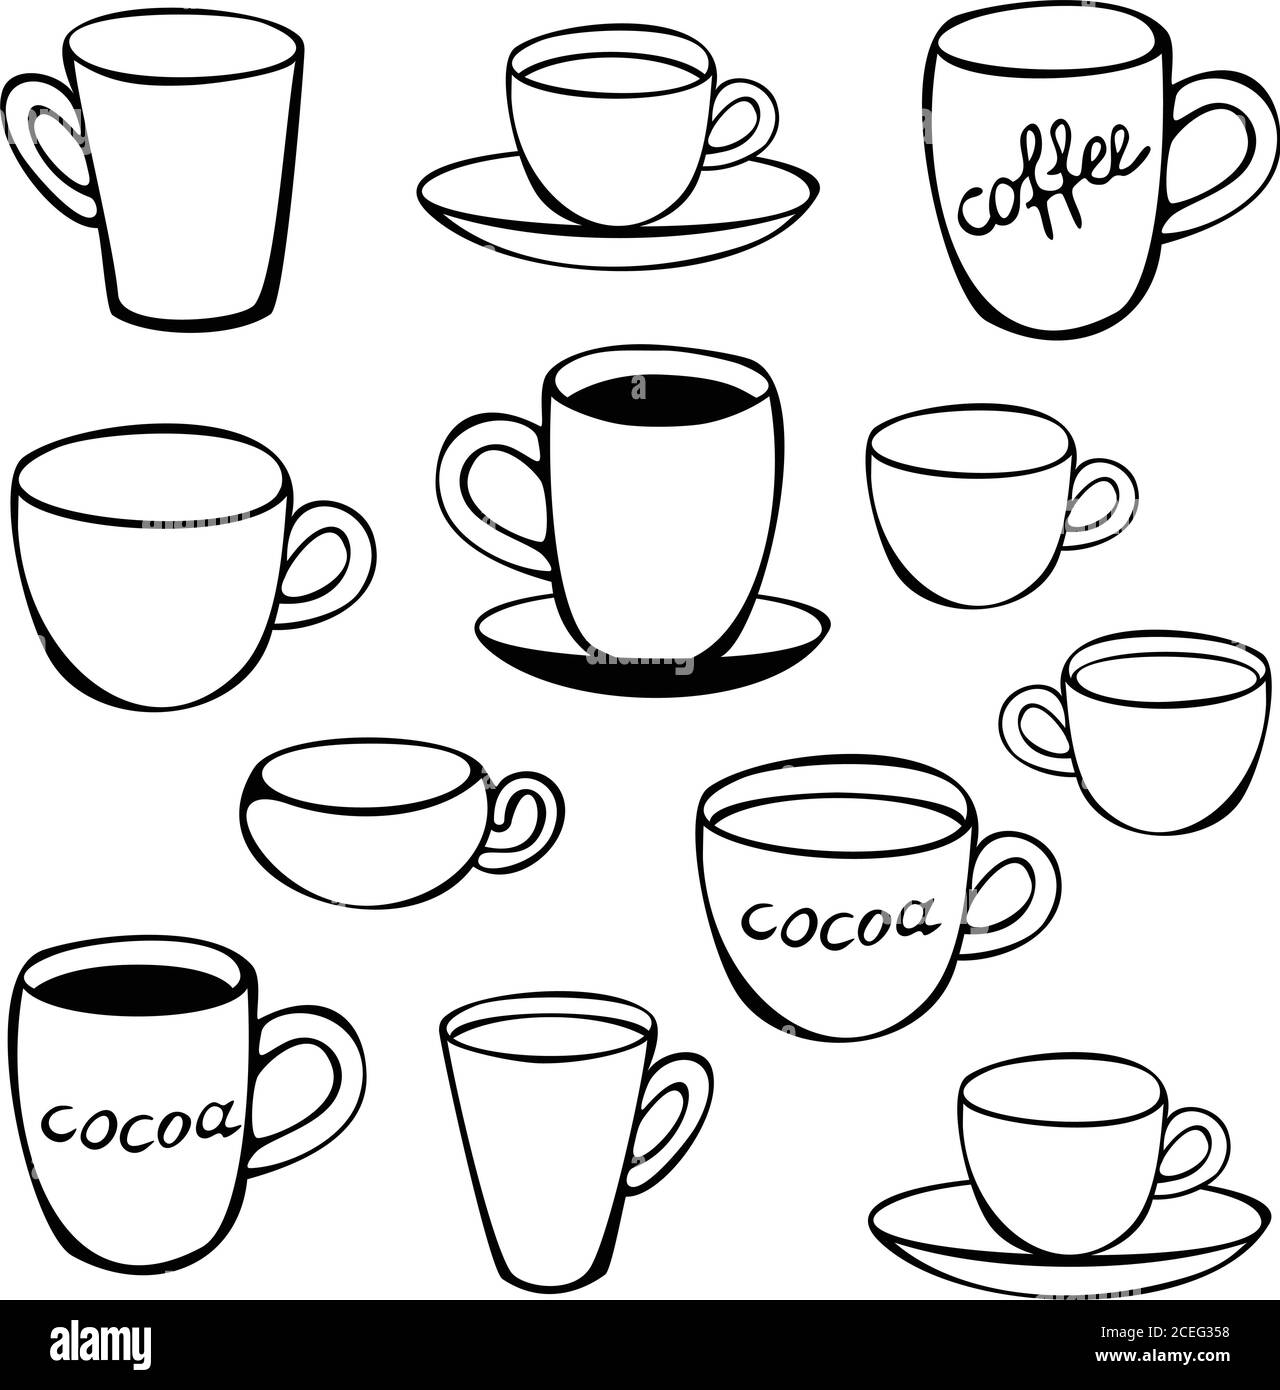 Schwarz-Weiß-Set aus zwölf verschiedenen Tassen und Tassen. Geschirr Vektor-Set mit Tassen. Konzept für Kaffeehaus. Stock Vektor